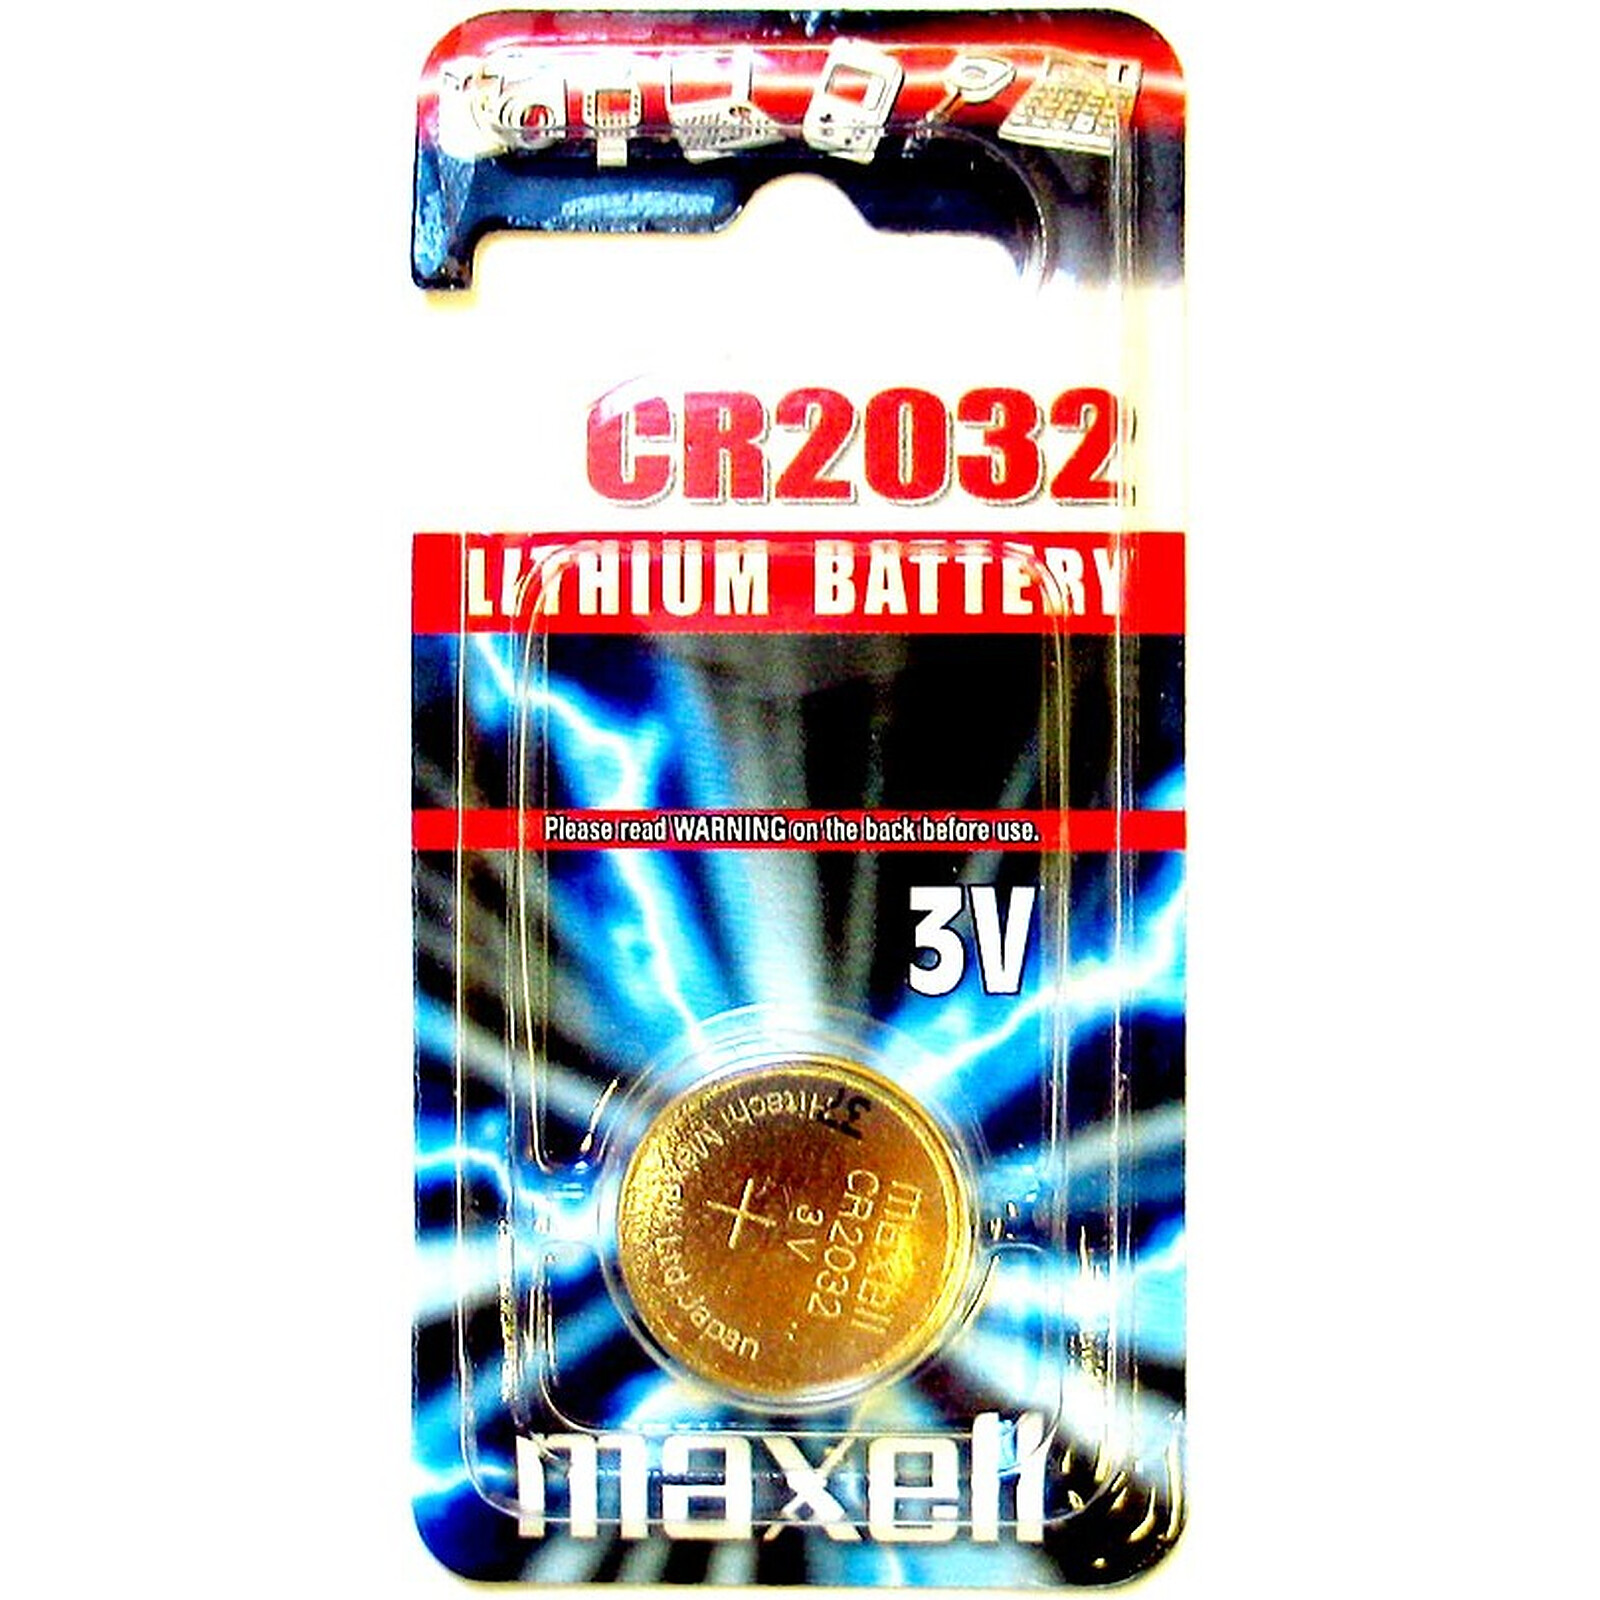 Pile bouton lithium CR2032 3 V